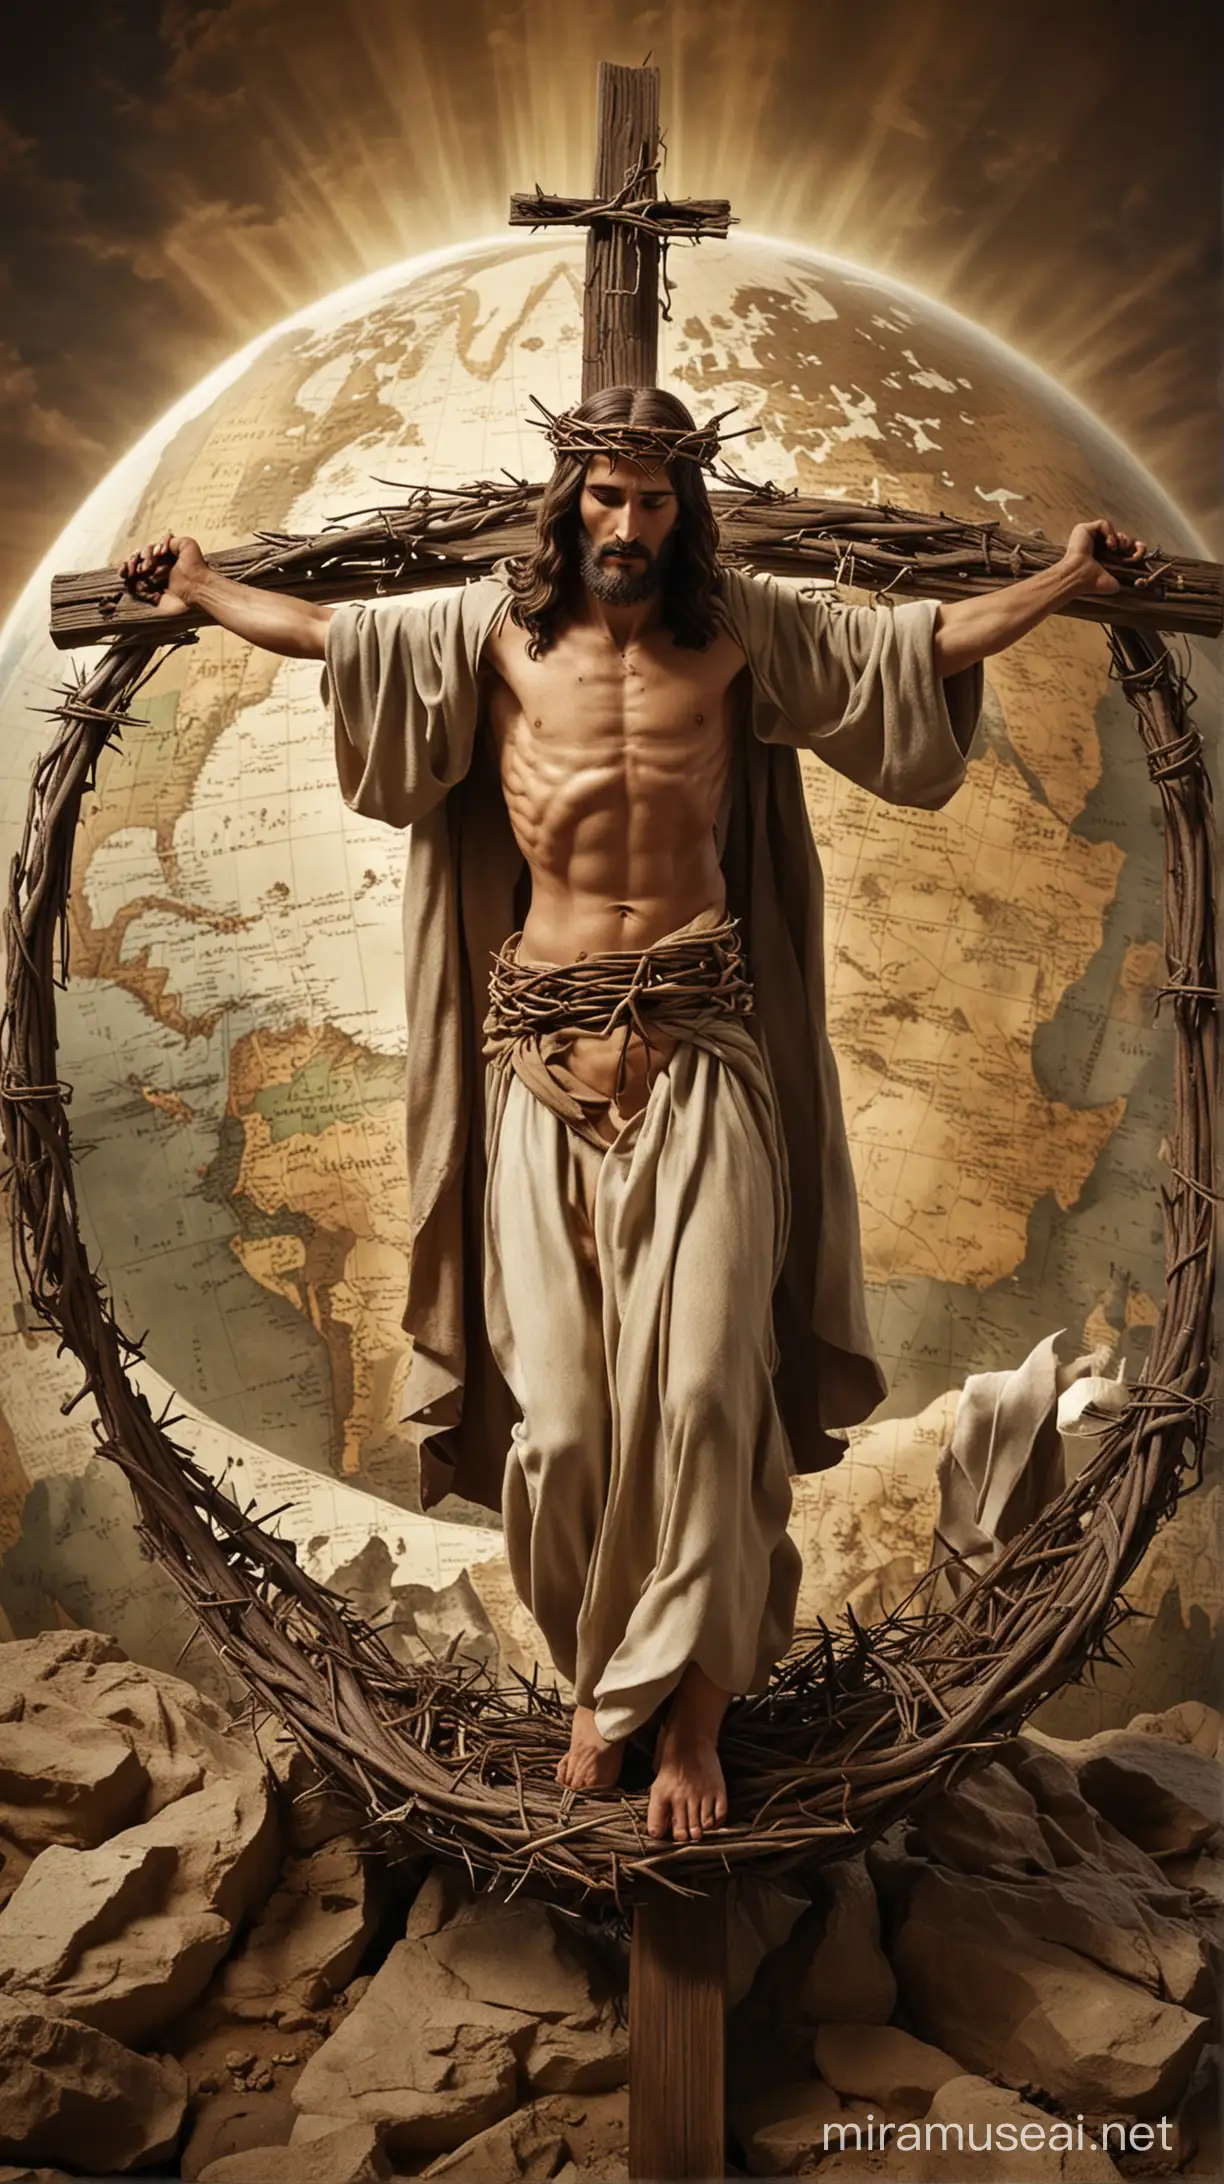 Gesù Cristo che si avvia verso il Calvario con la croce sulle spalle e la corona di spine che gli cinge la testa. Sfondo il globo della Terra